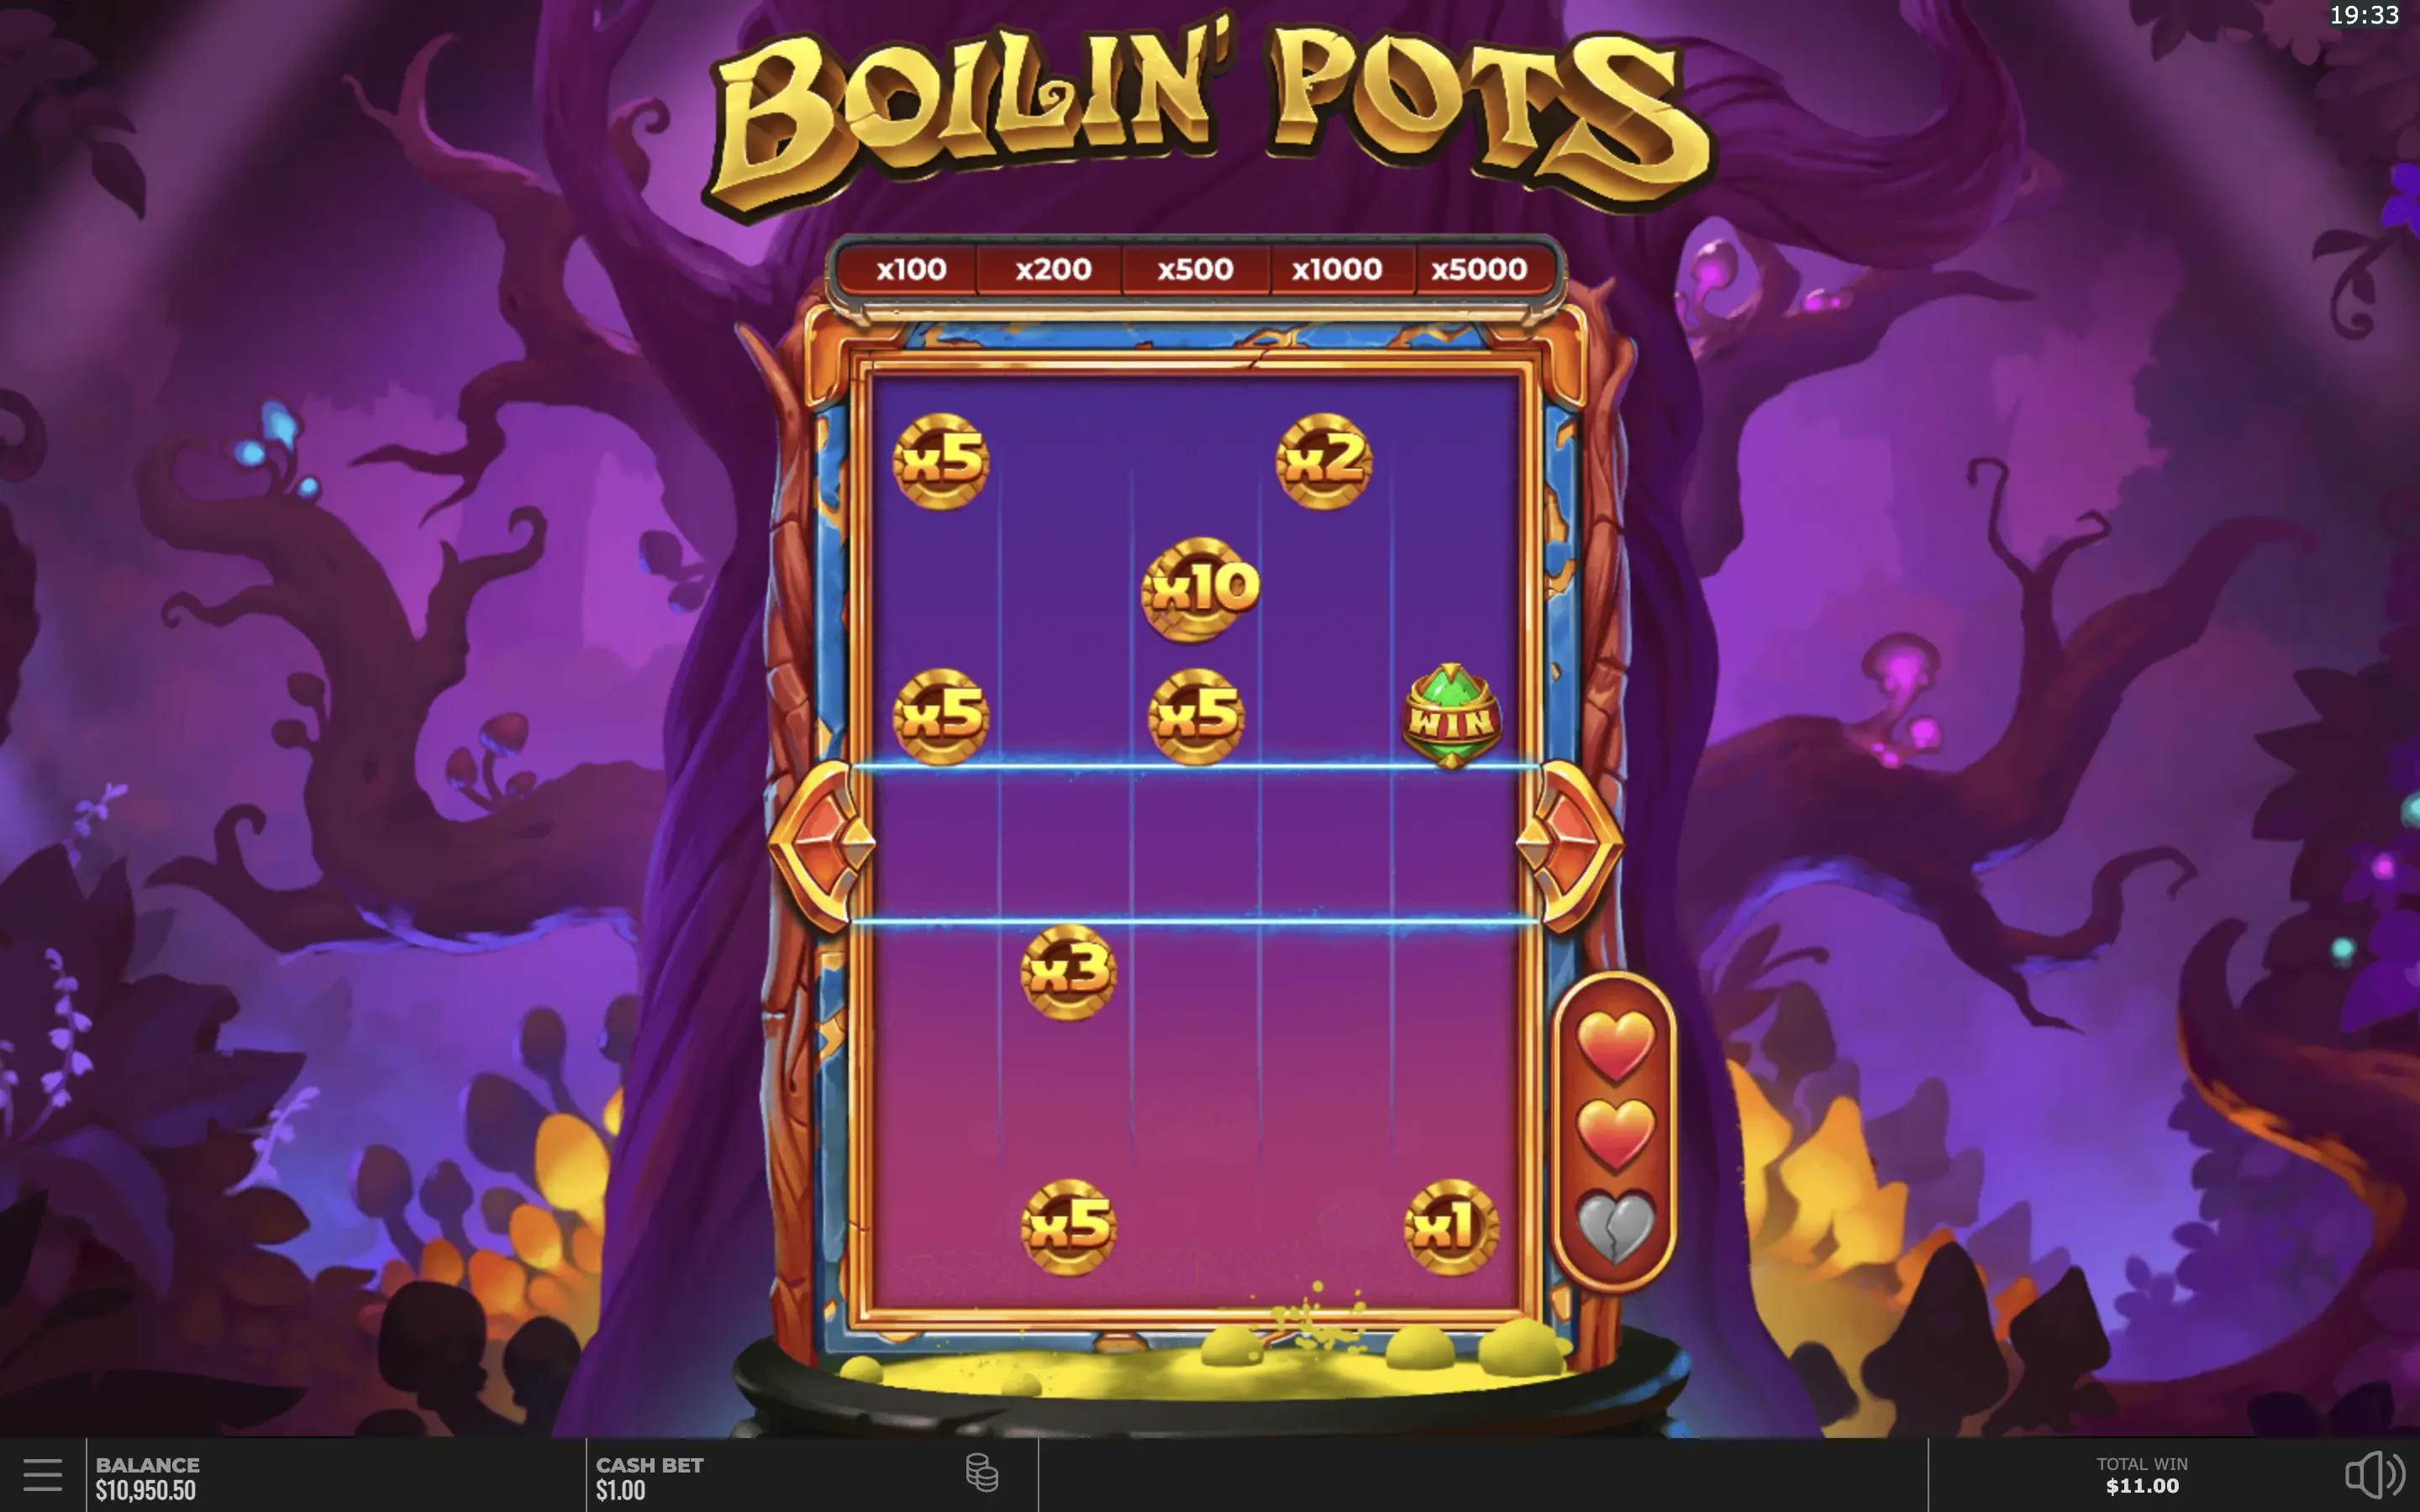 Le bonus de Boilin' Pots